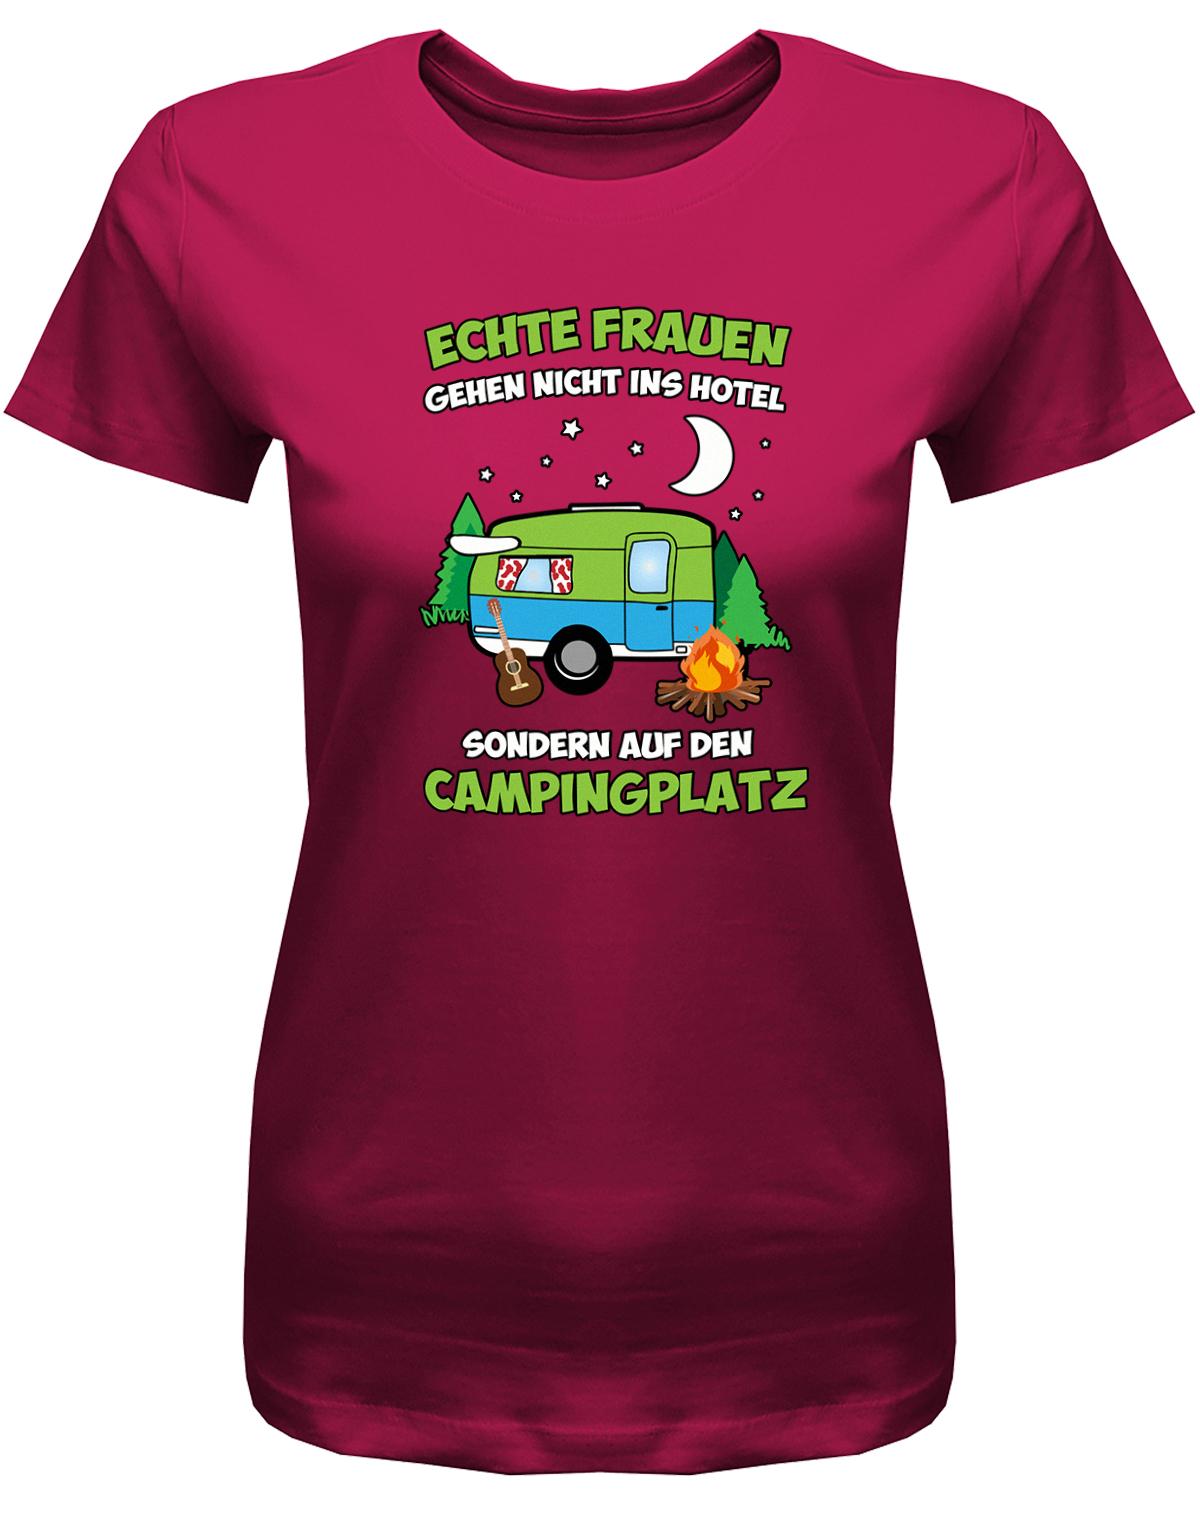 Echte-Frauen-gehen-nicht-ins-Hotel-sondern-aufn-Campingplatz-Damen-Shirt-sorbet